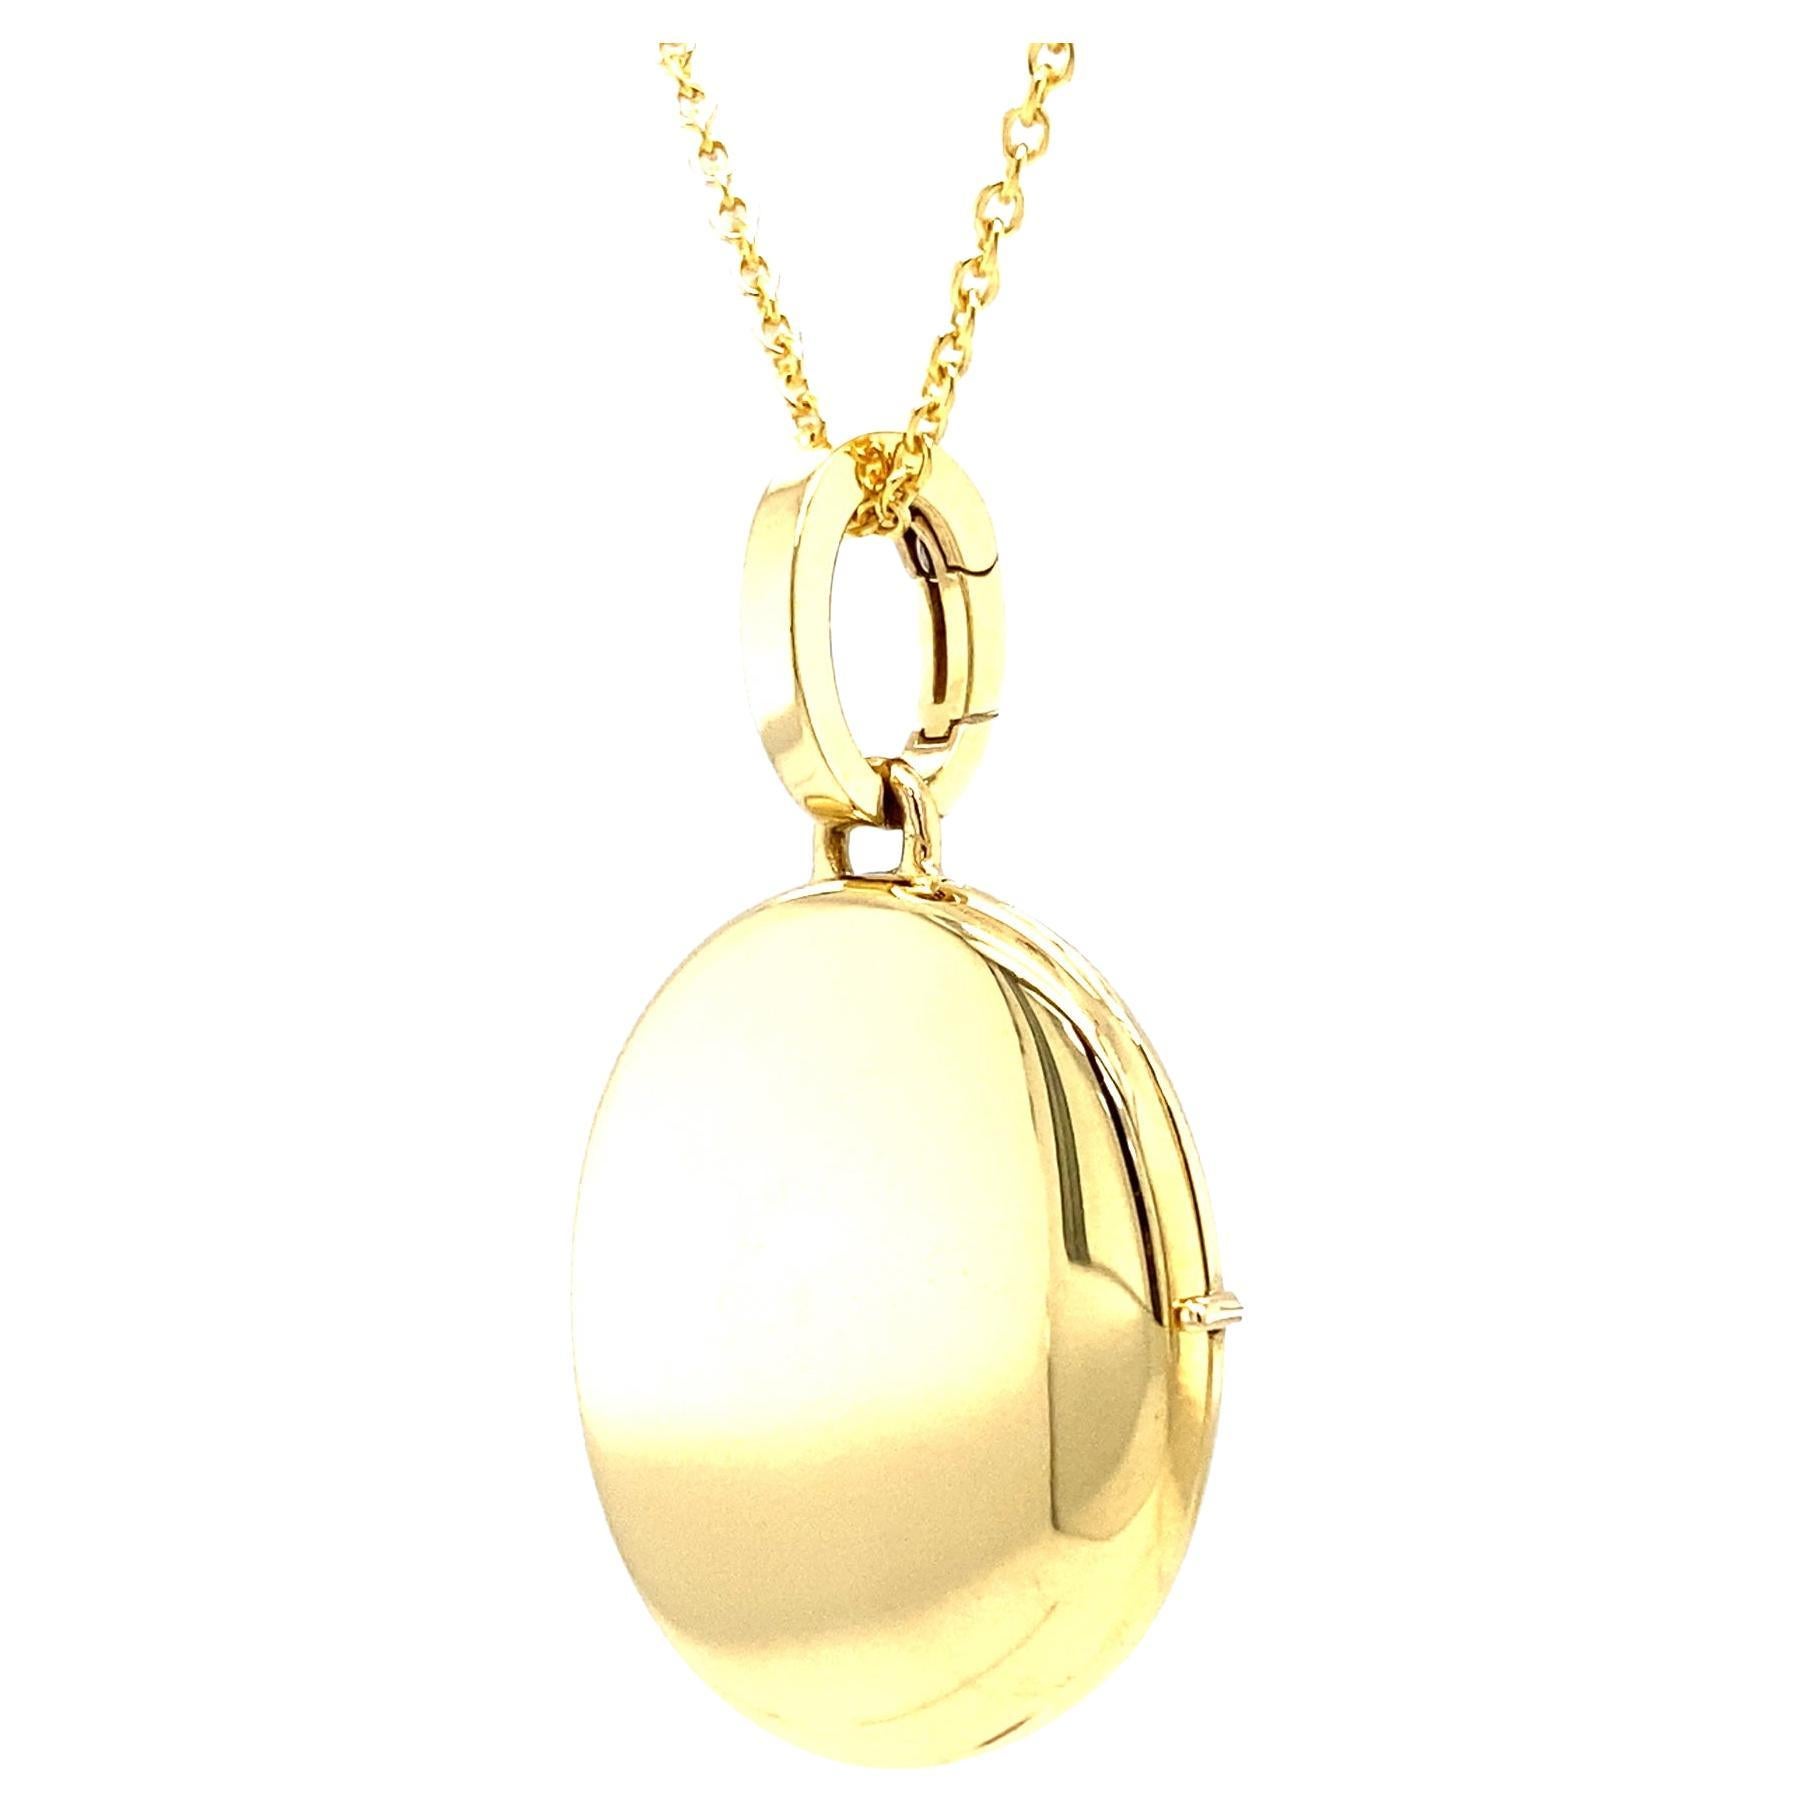 Collier médaillon pendentif ovale personnalisable en or jaune 18 carats, 23 mm x 20 mm